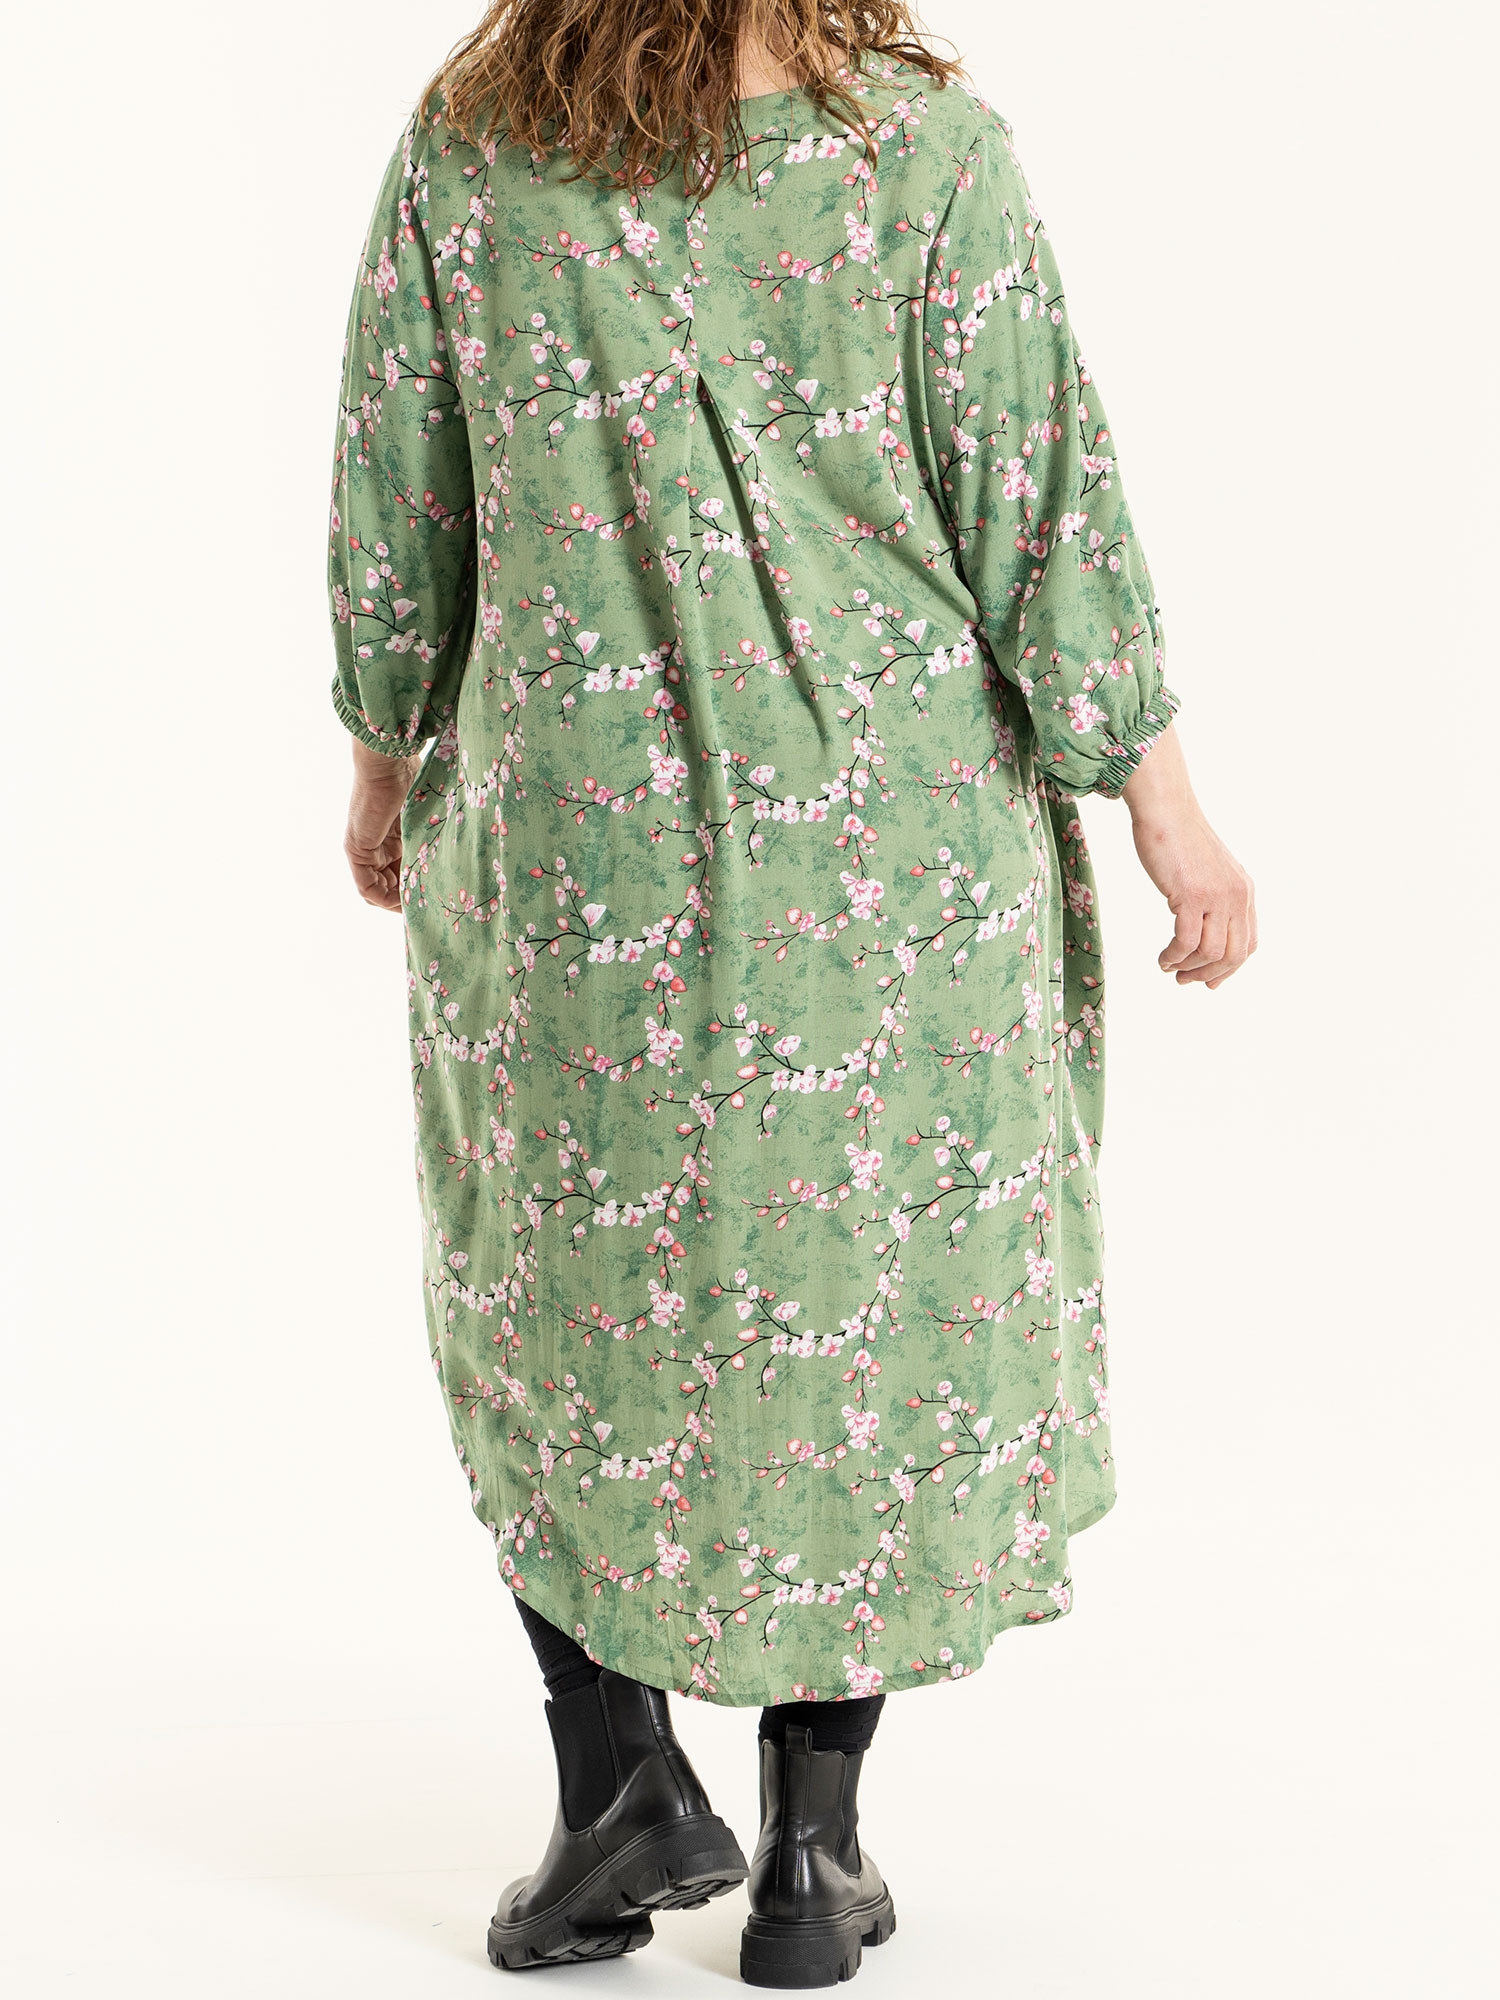 ELSE - Grøn viskose kjole med blomster print fra Gozzip